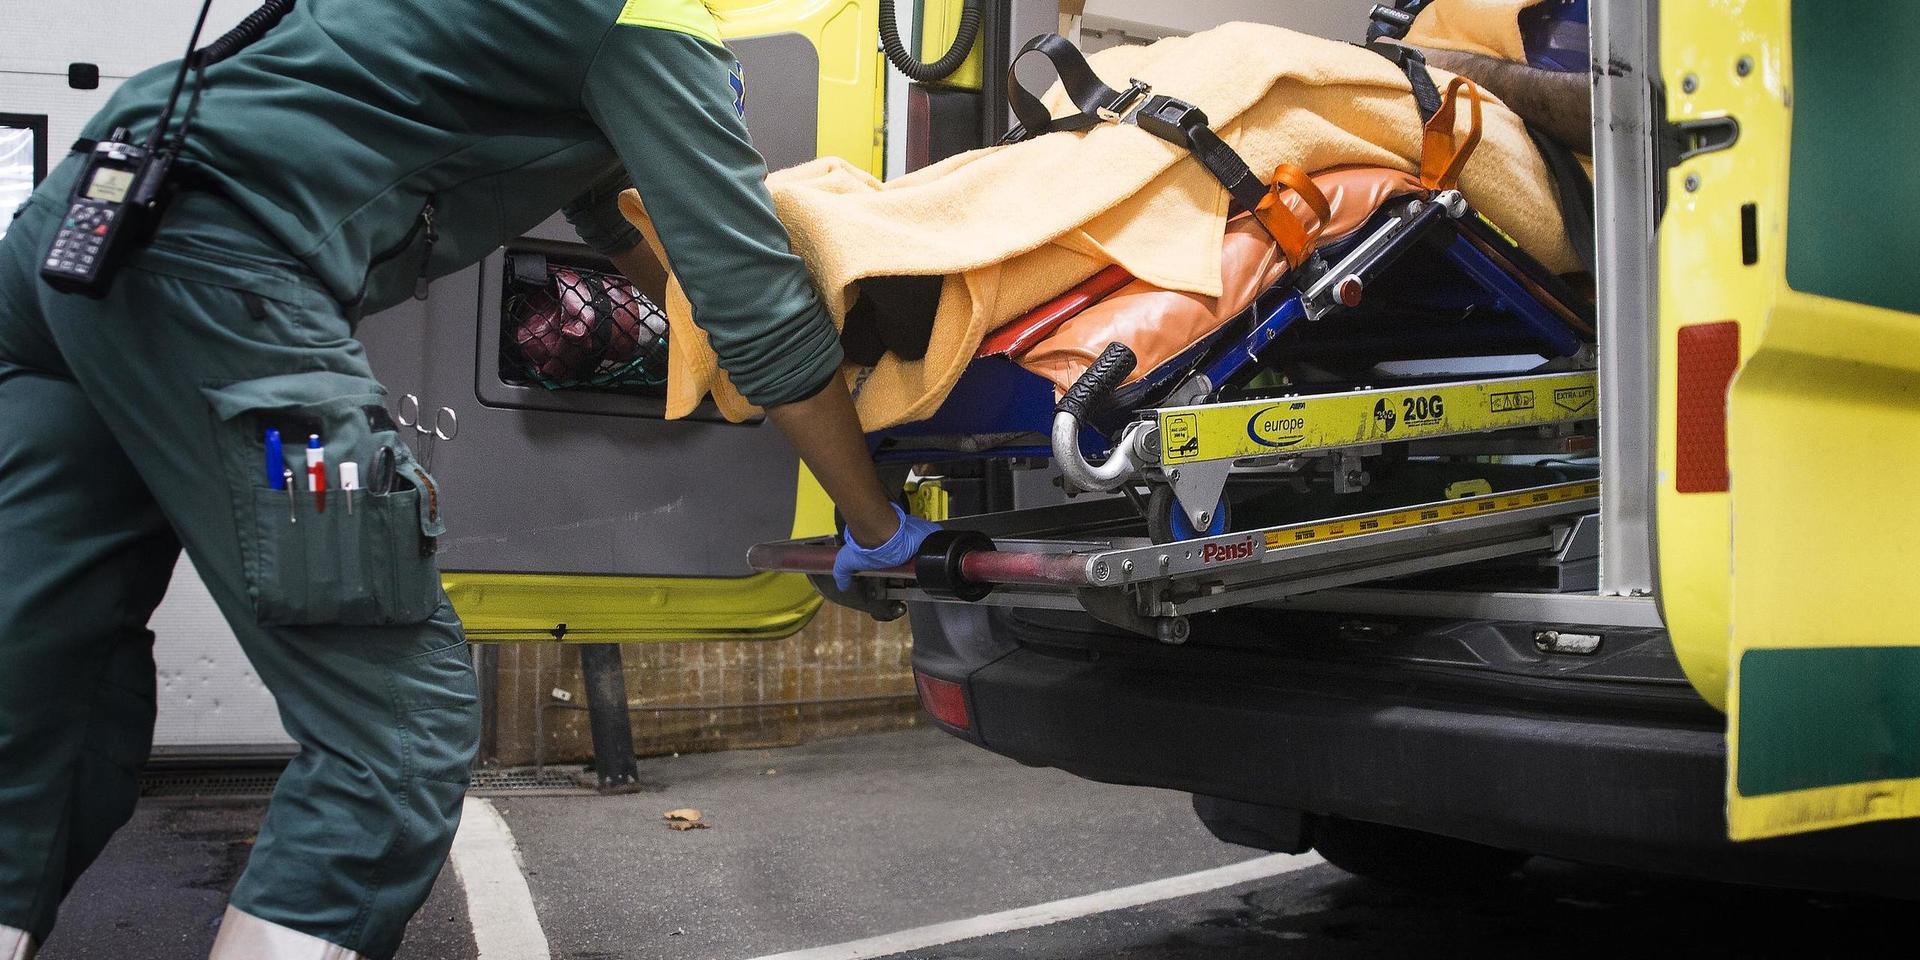 Kvinnlig ambulanssjukvårdare med patient på bår i ambulans.